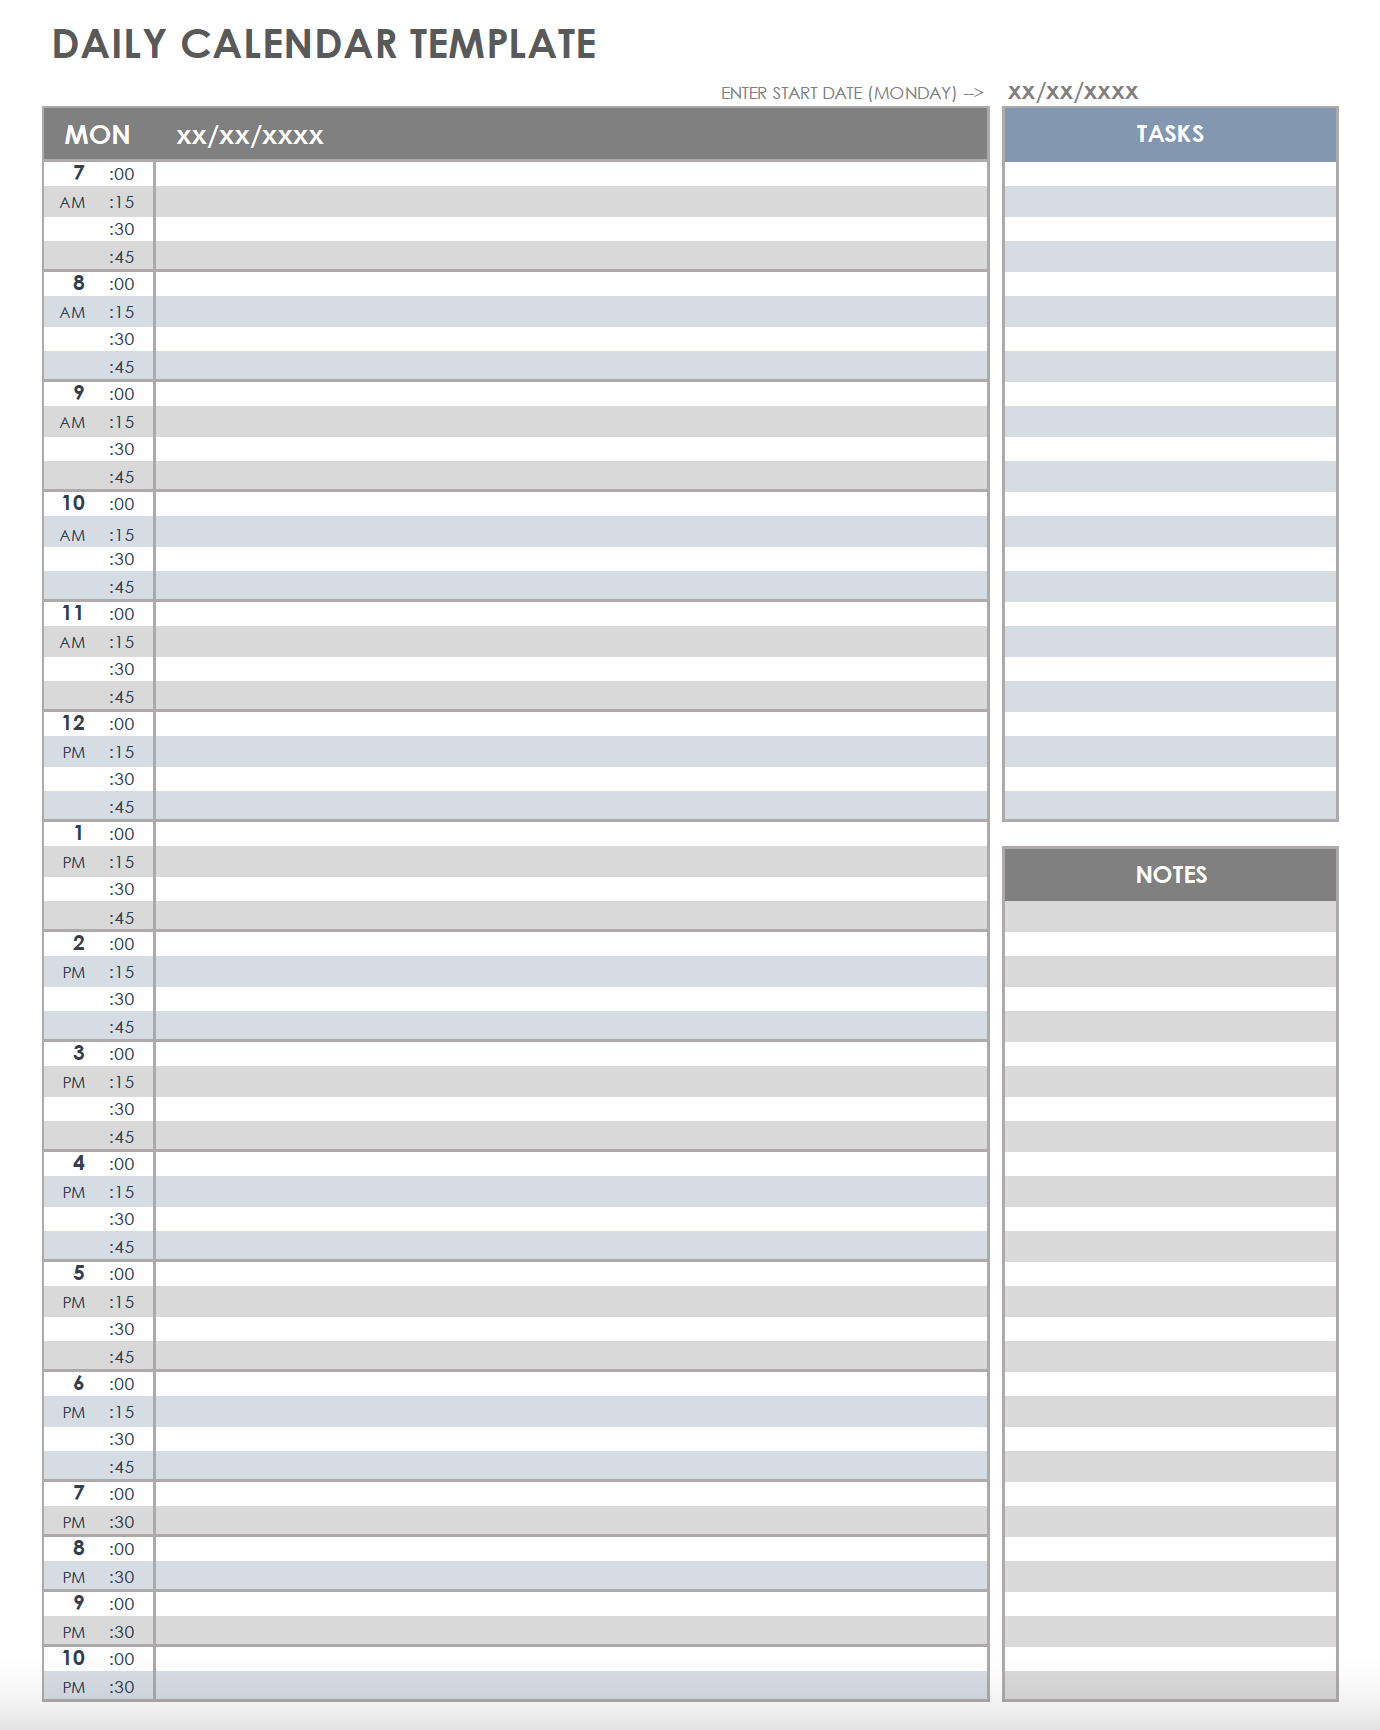 agenda daily schedule pdf